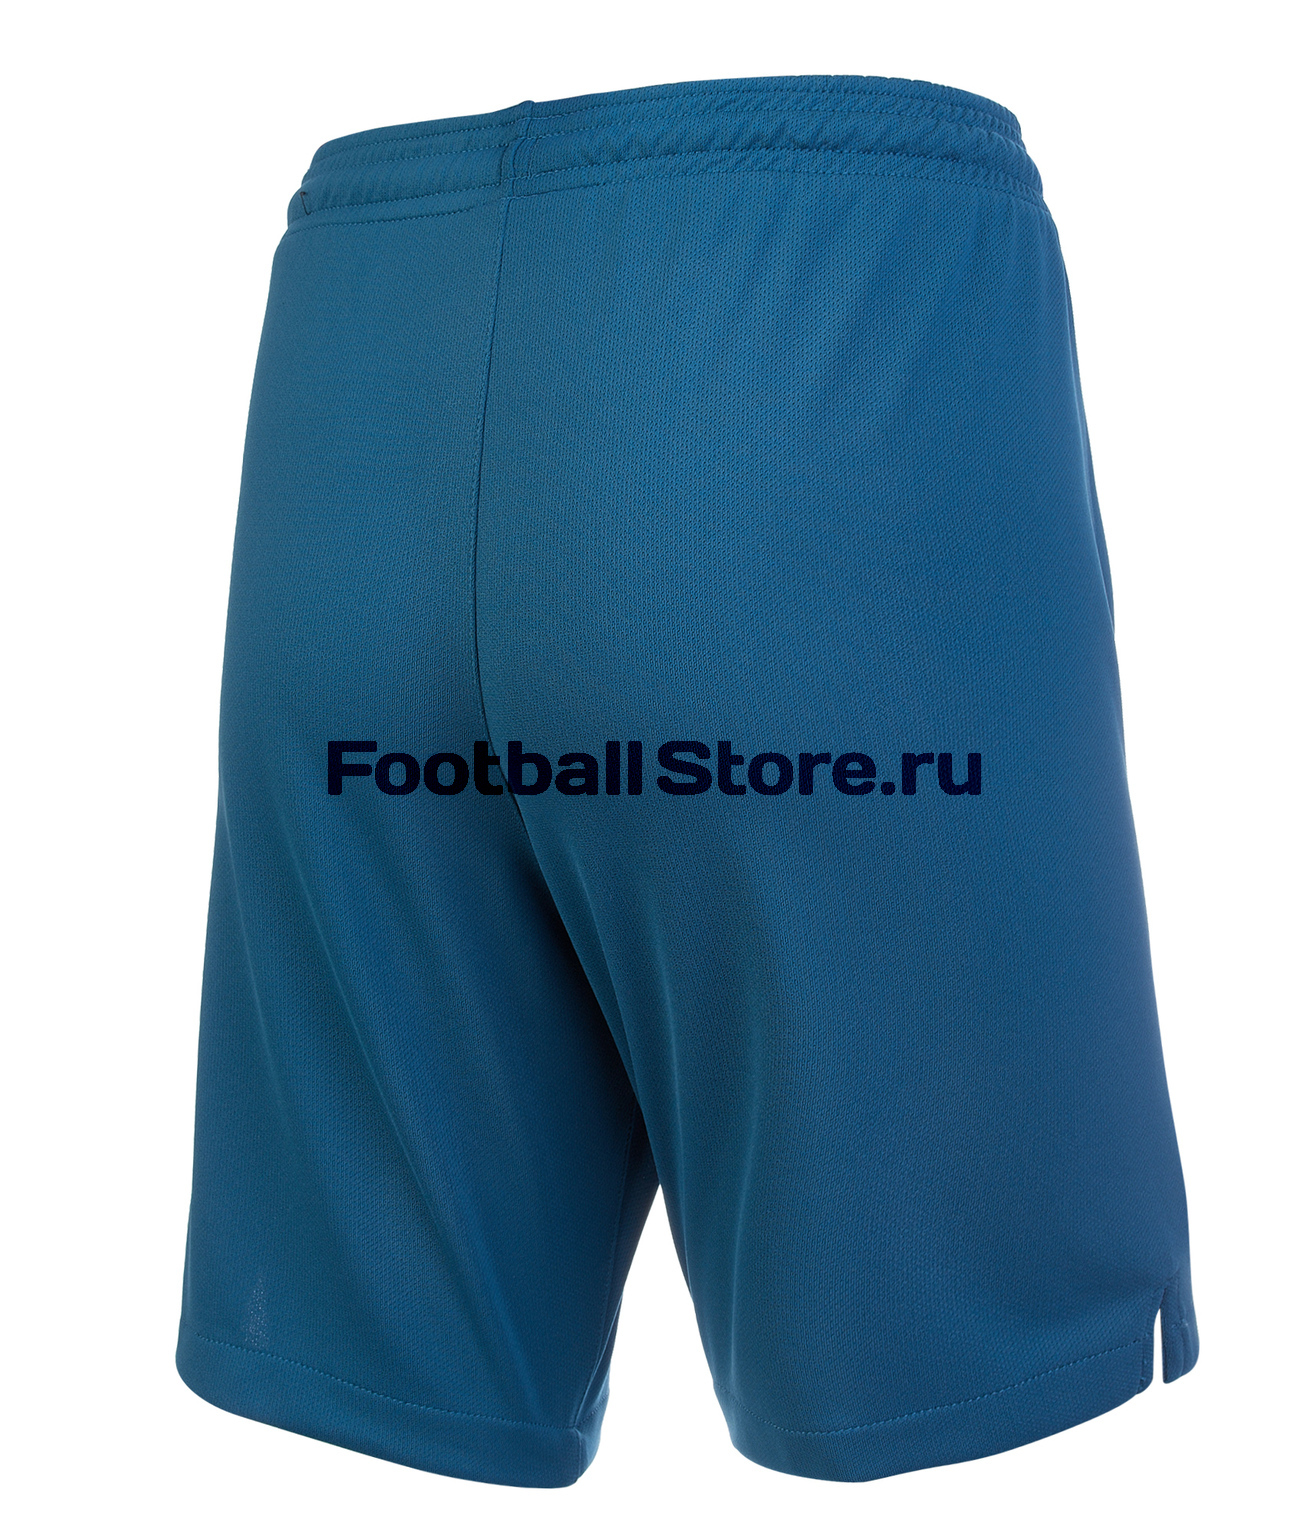 Шорты домашние подростковые Nike Zenit сезон 2019/20